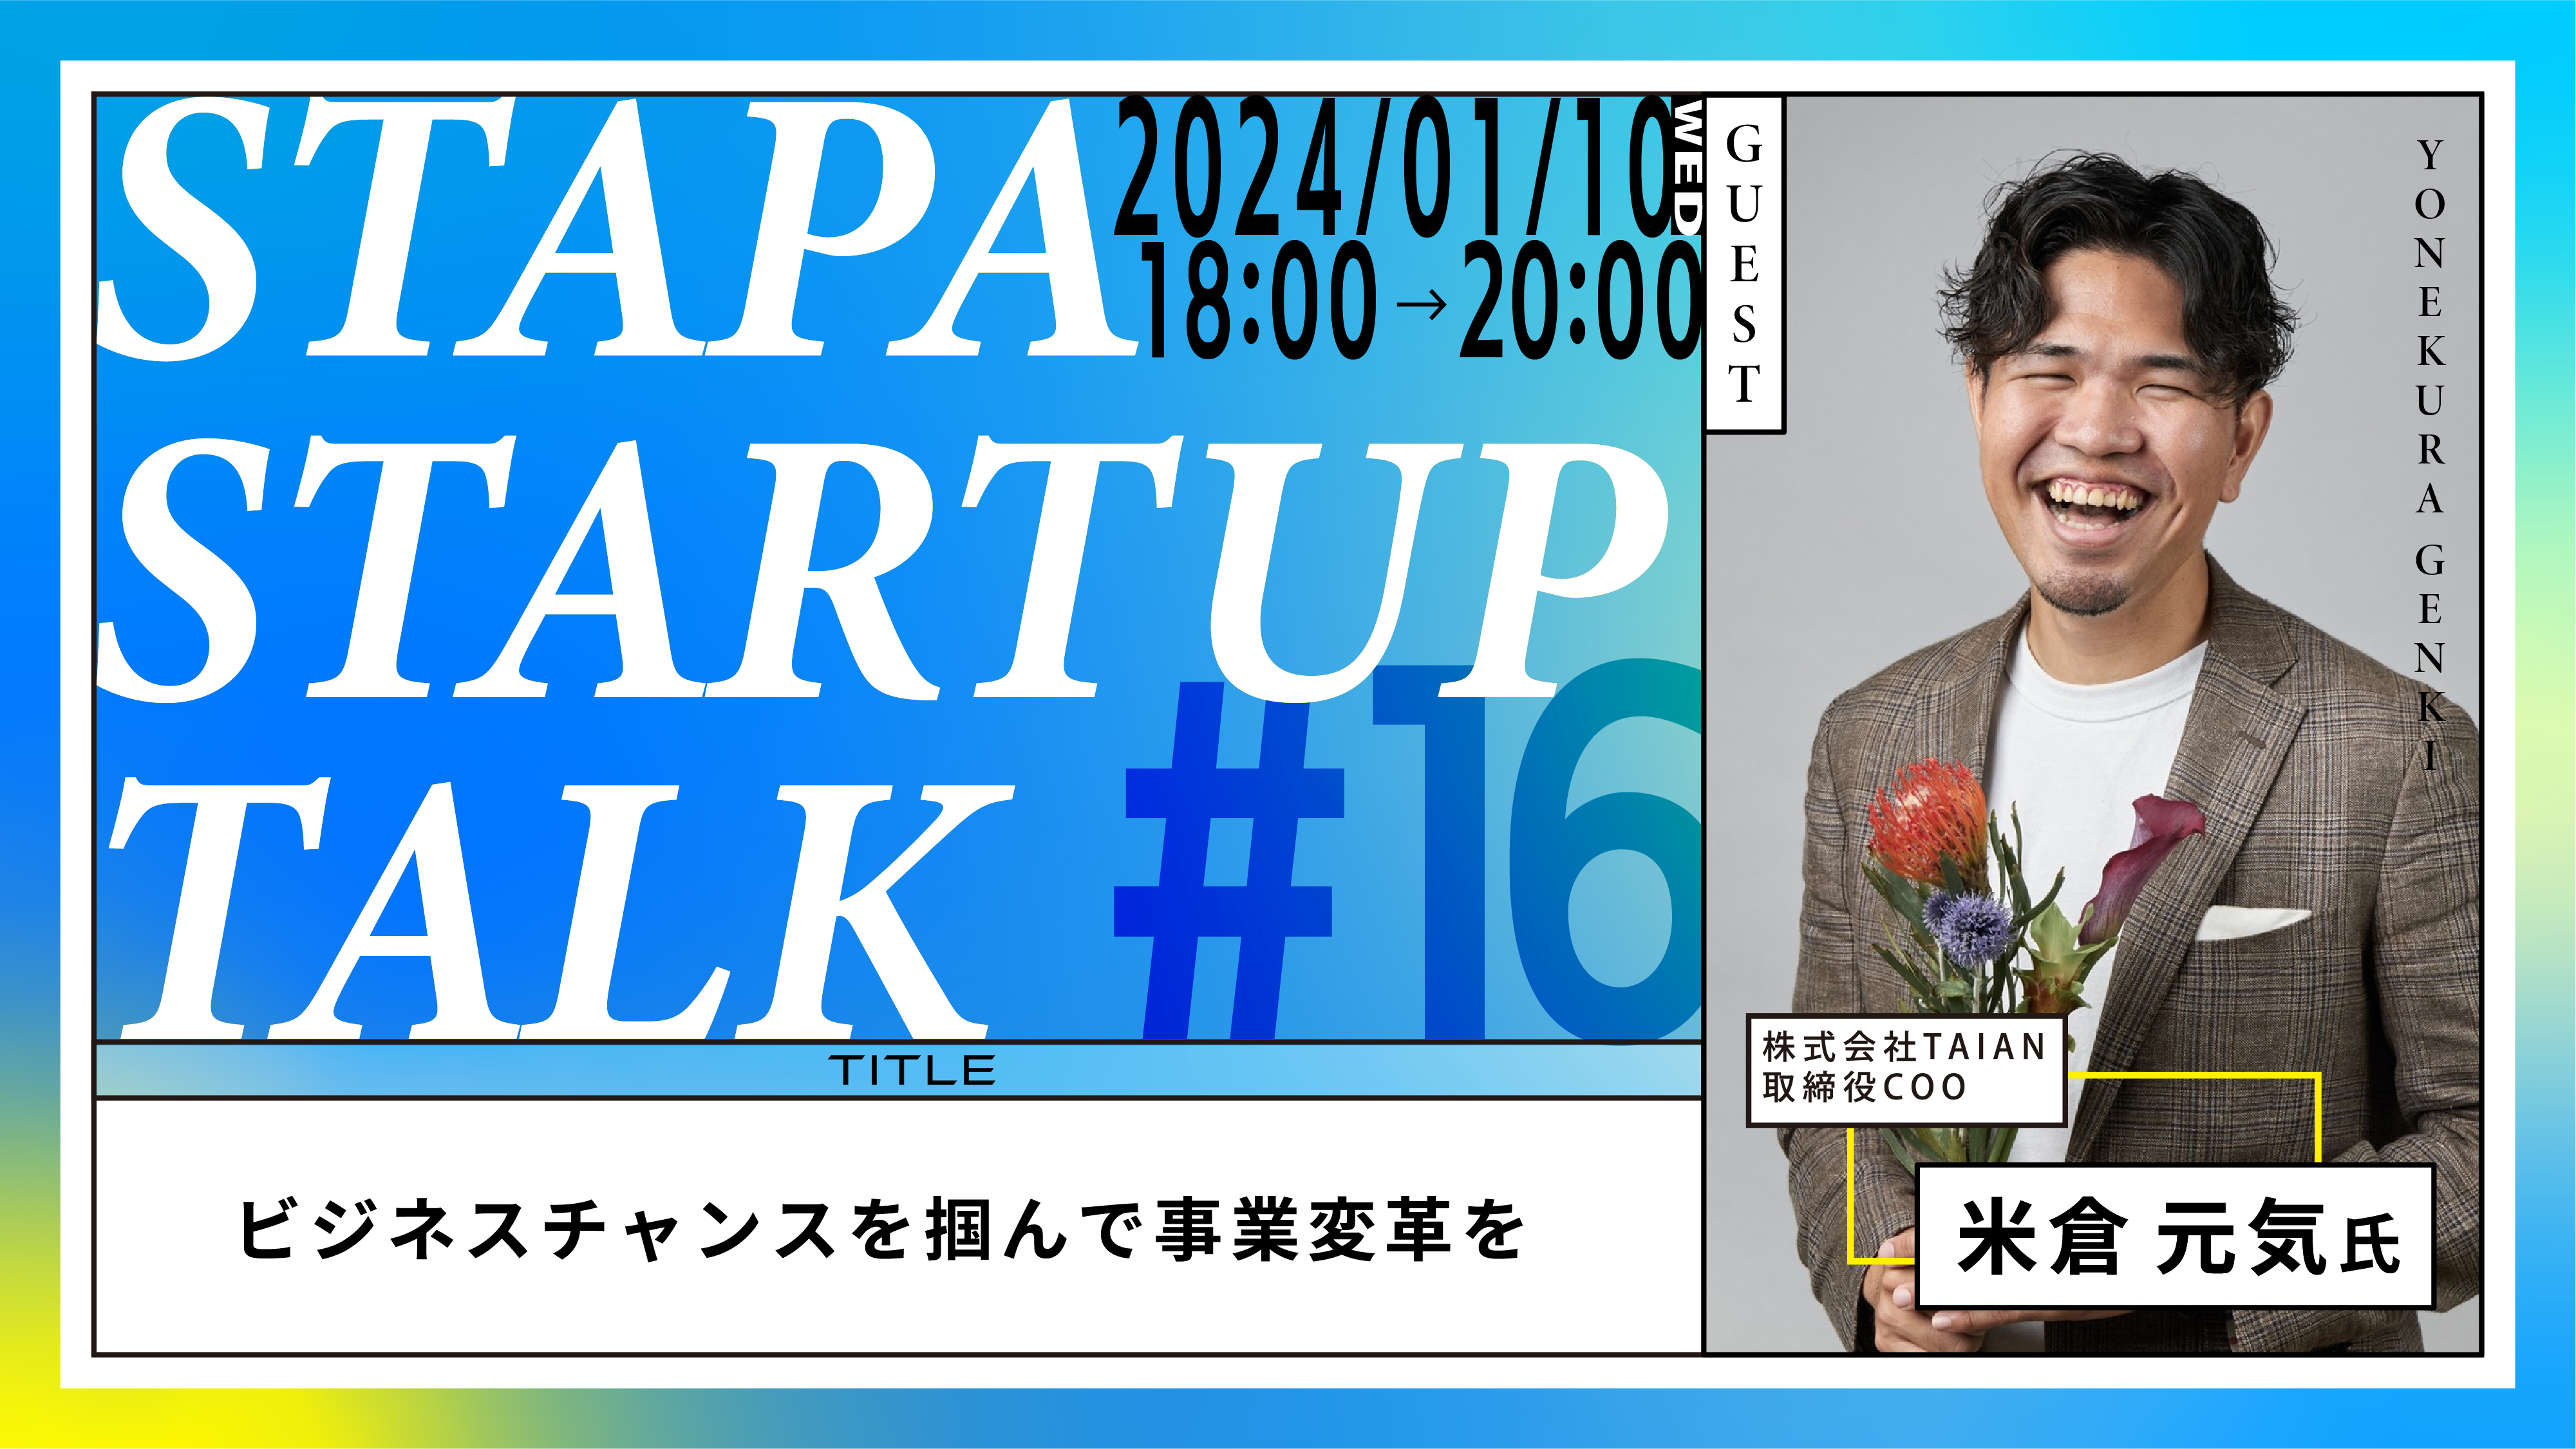 STAPA STARTUP TALK #16 －ビジネスチャンスを掴んで事業変革を－